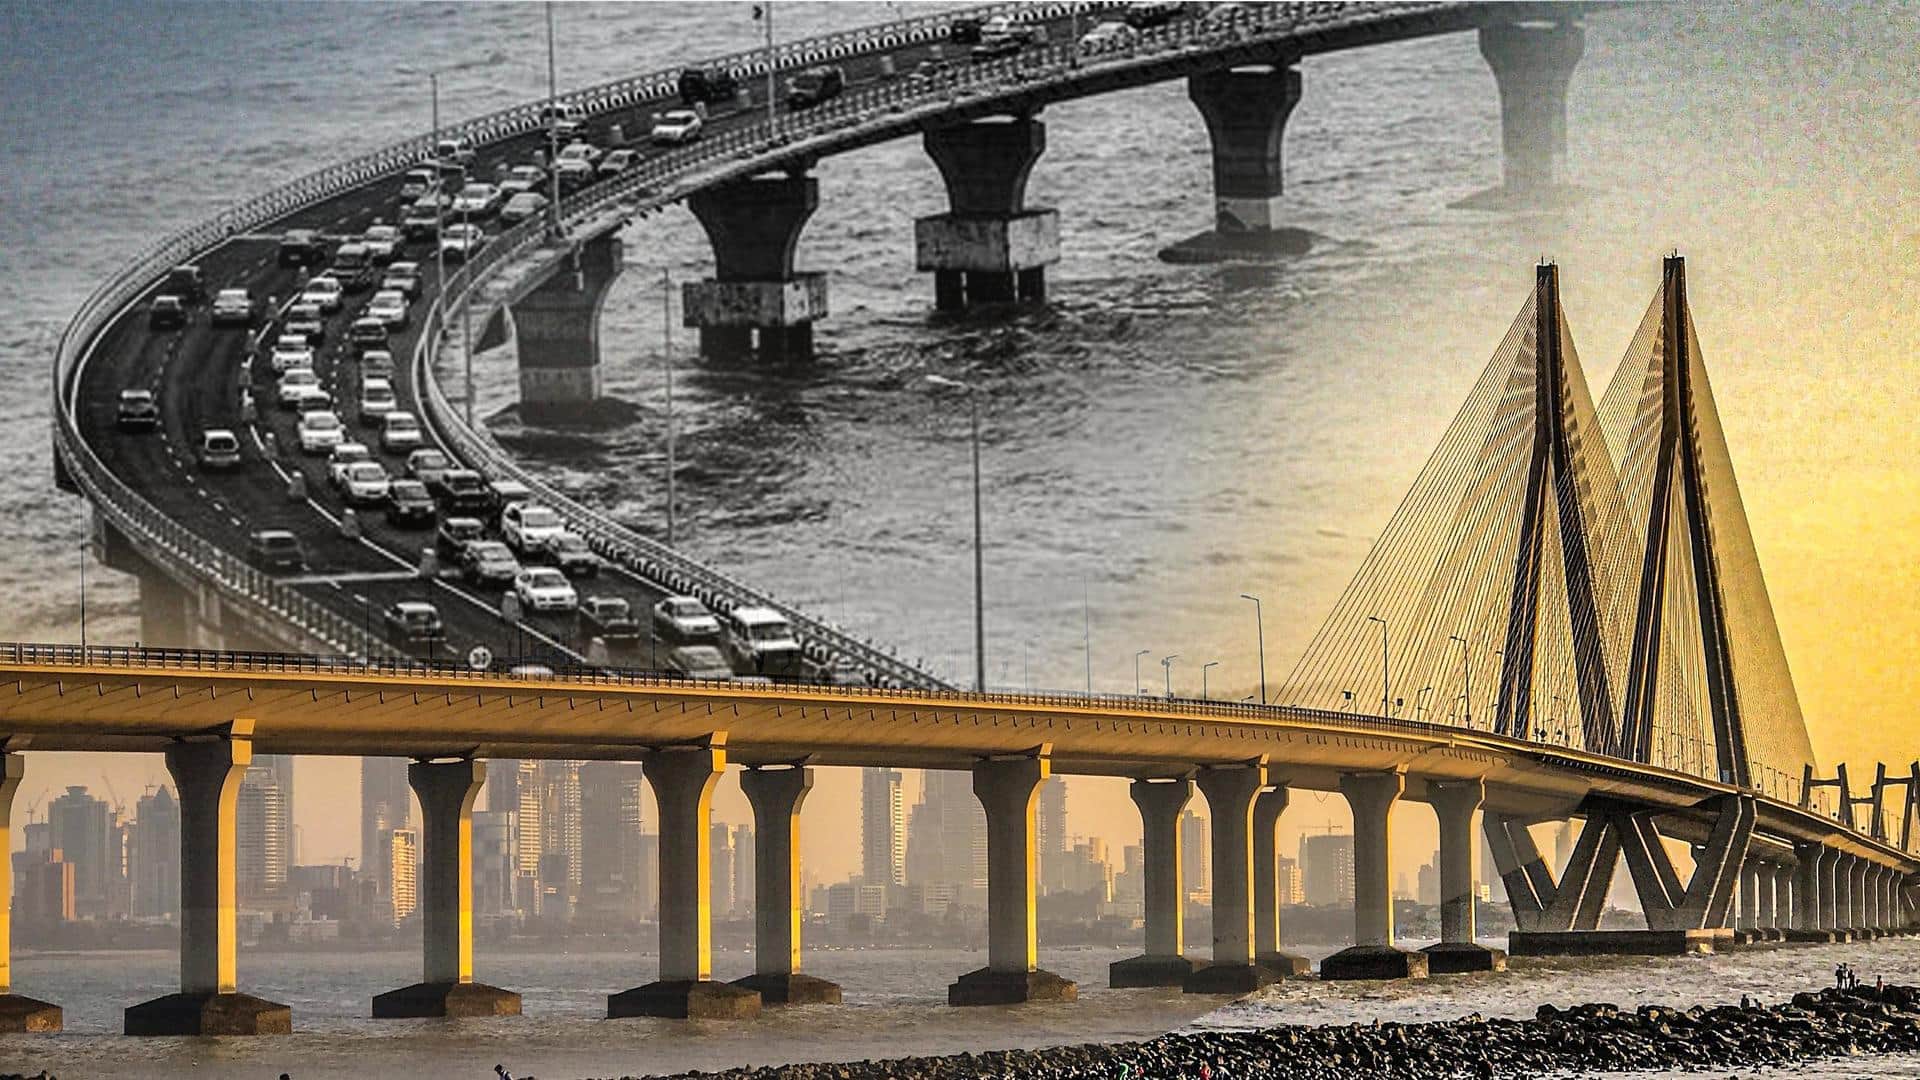 India's longest sea bridge to open in Mumbai this year